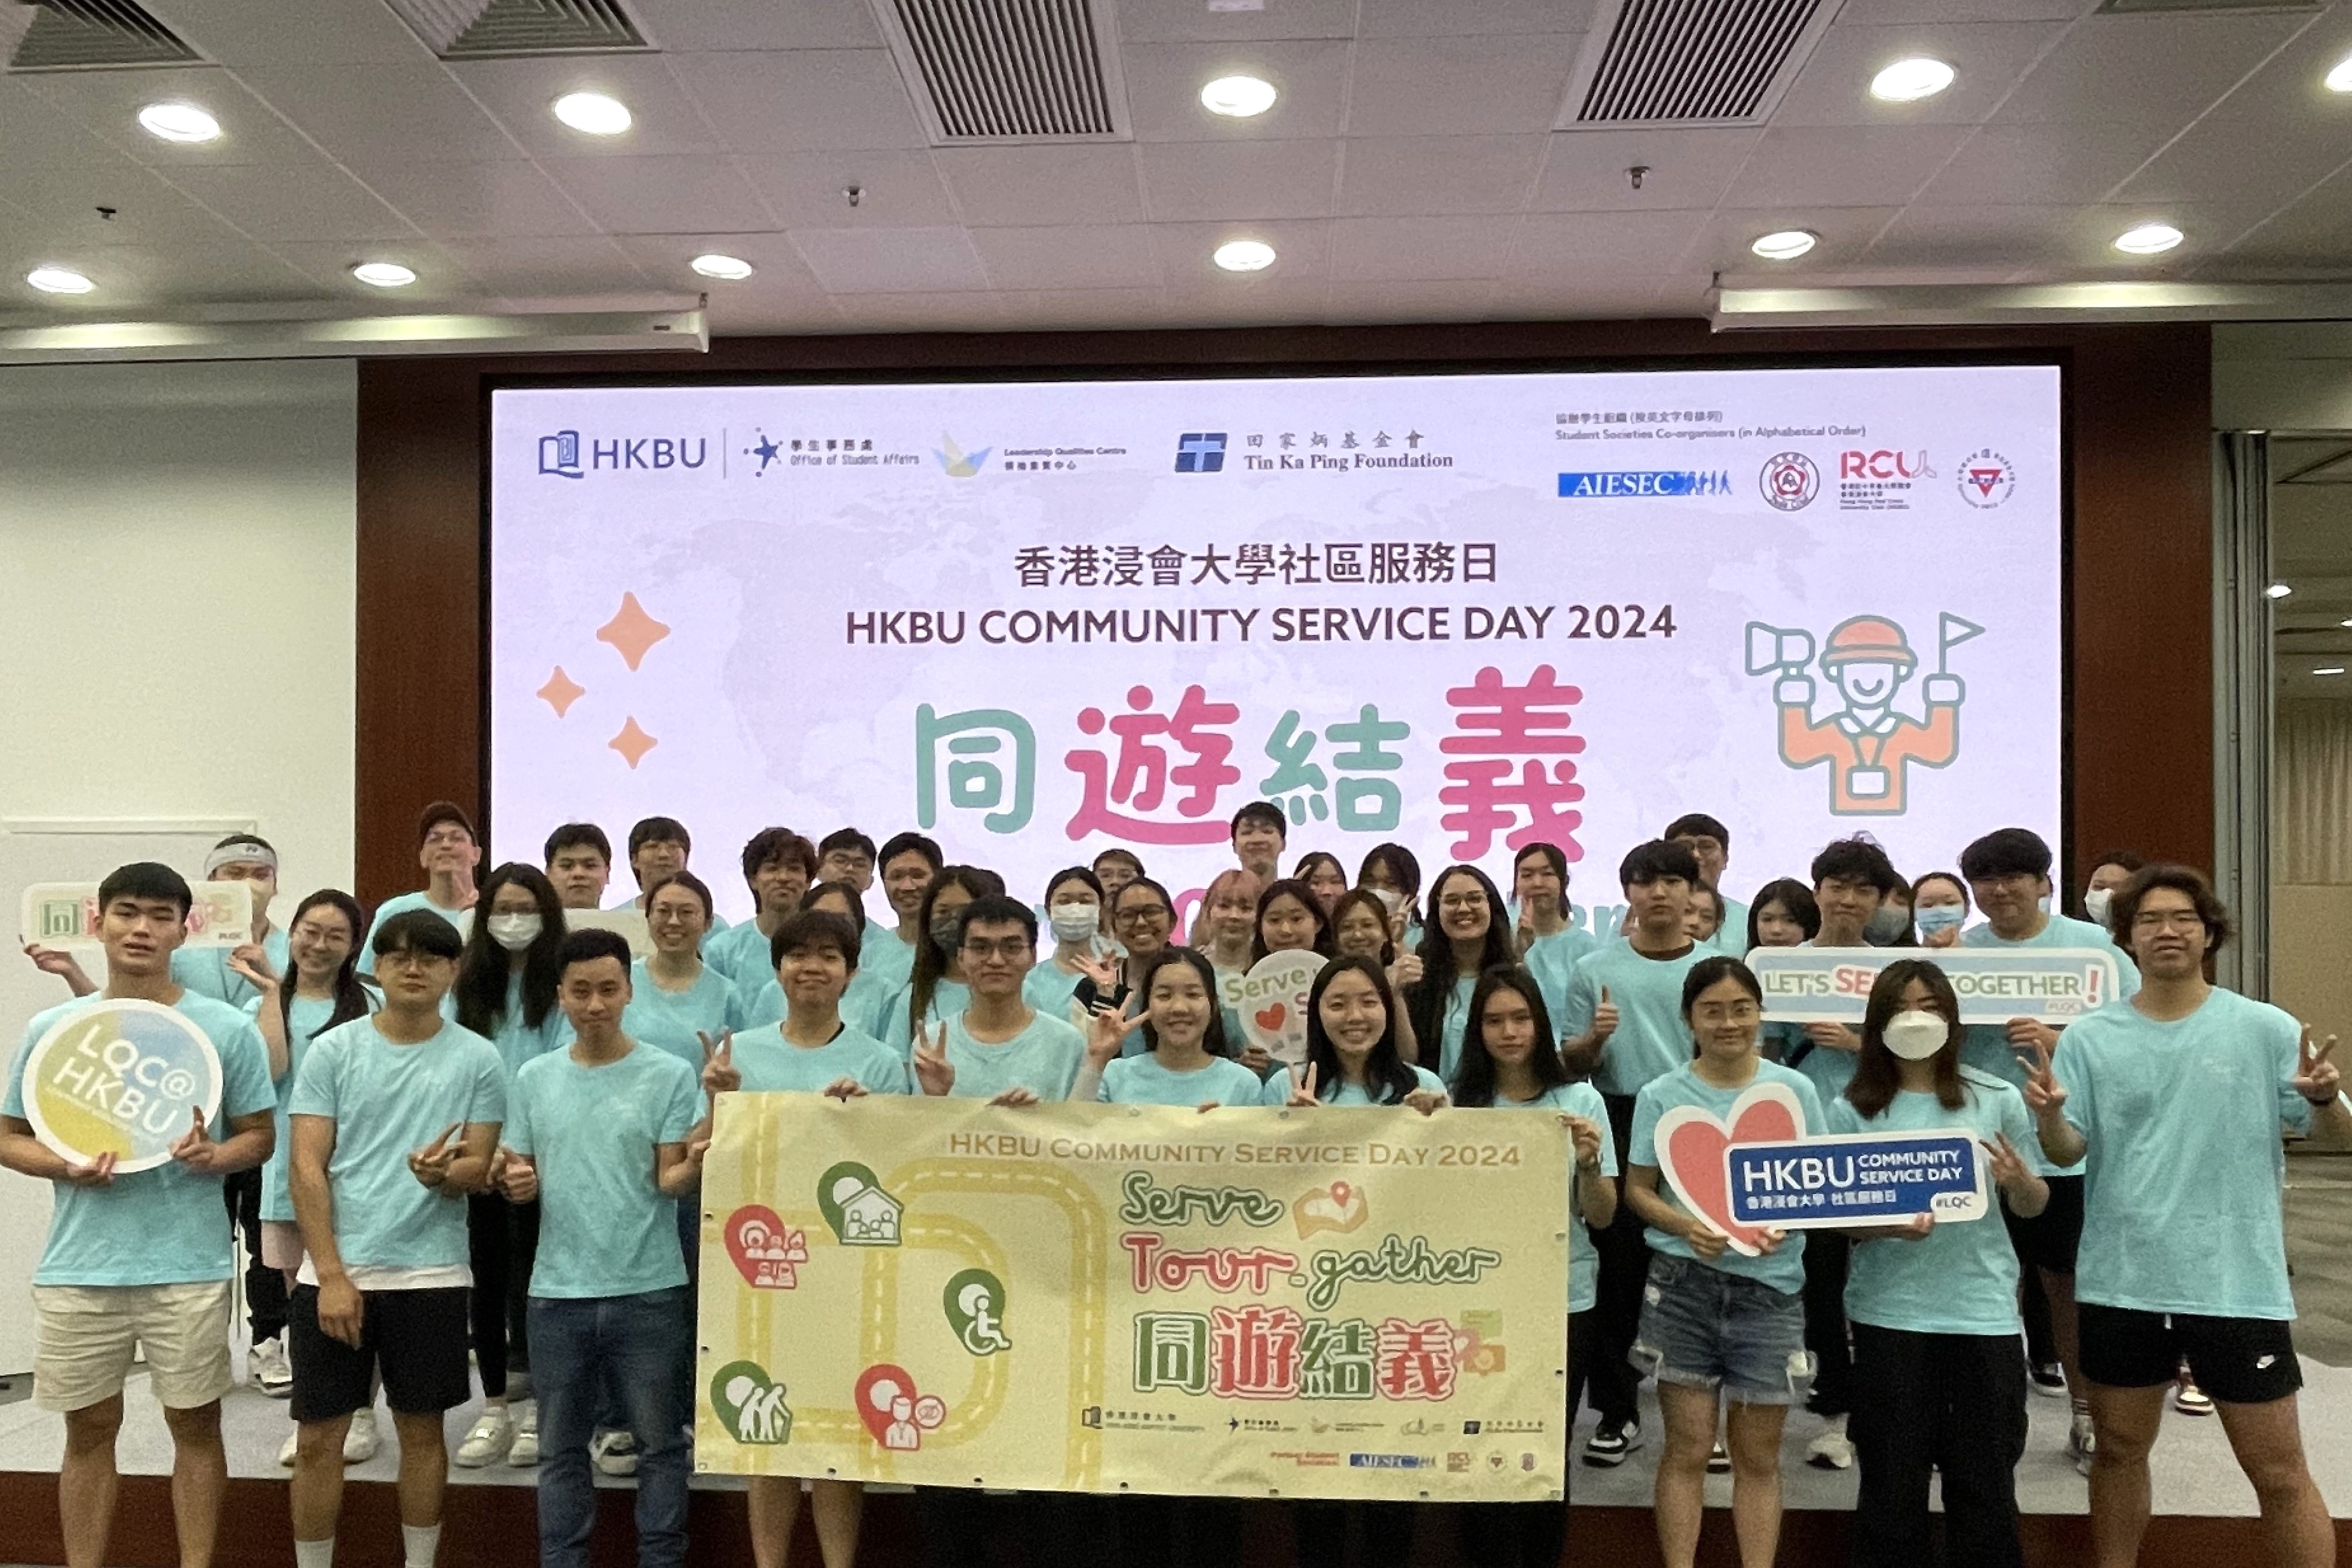 Serving society through HKBU Community Service Day 